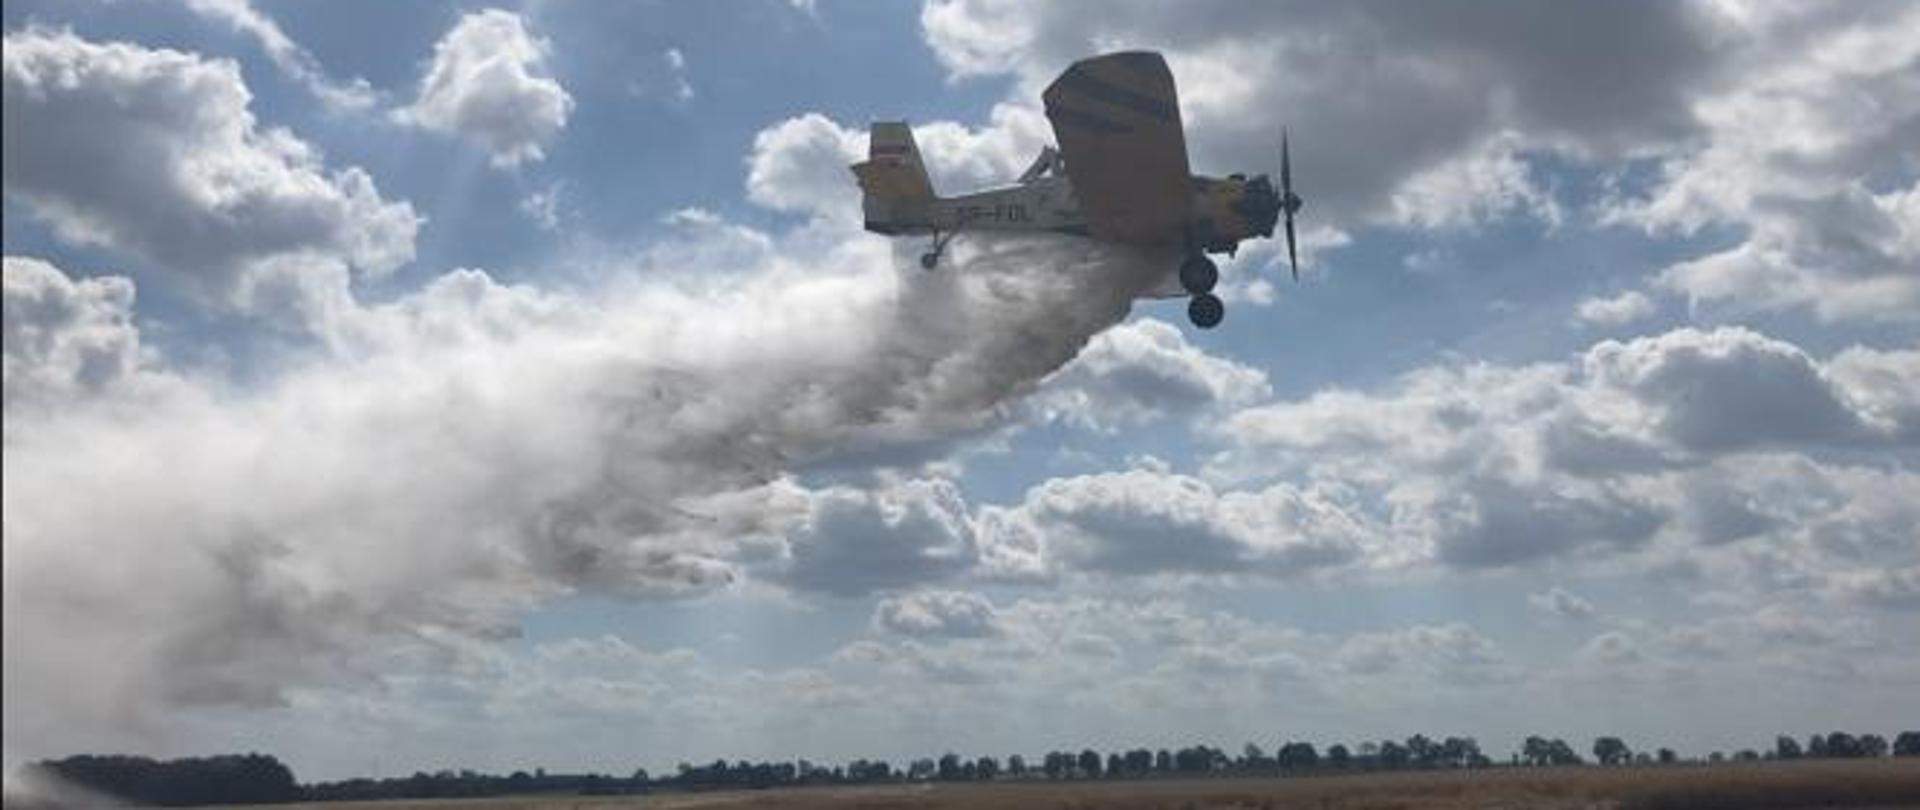 Samolot gaśniczy w trakcie zrzutu wody